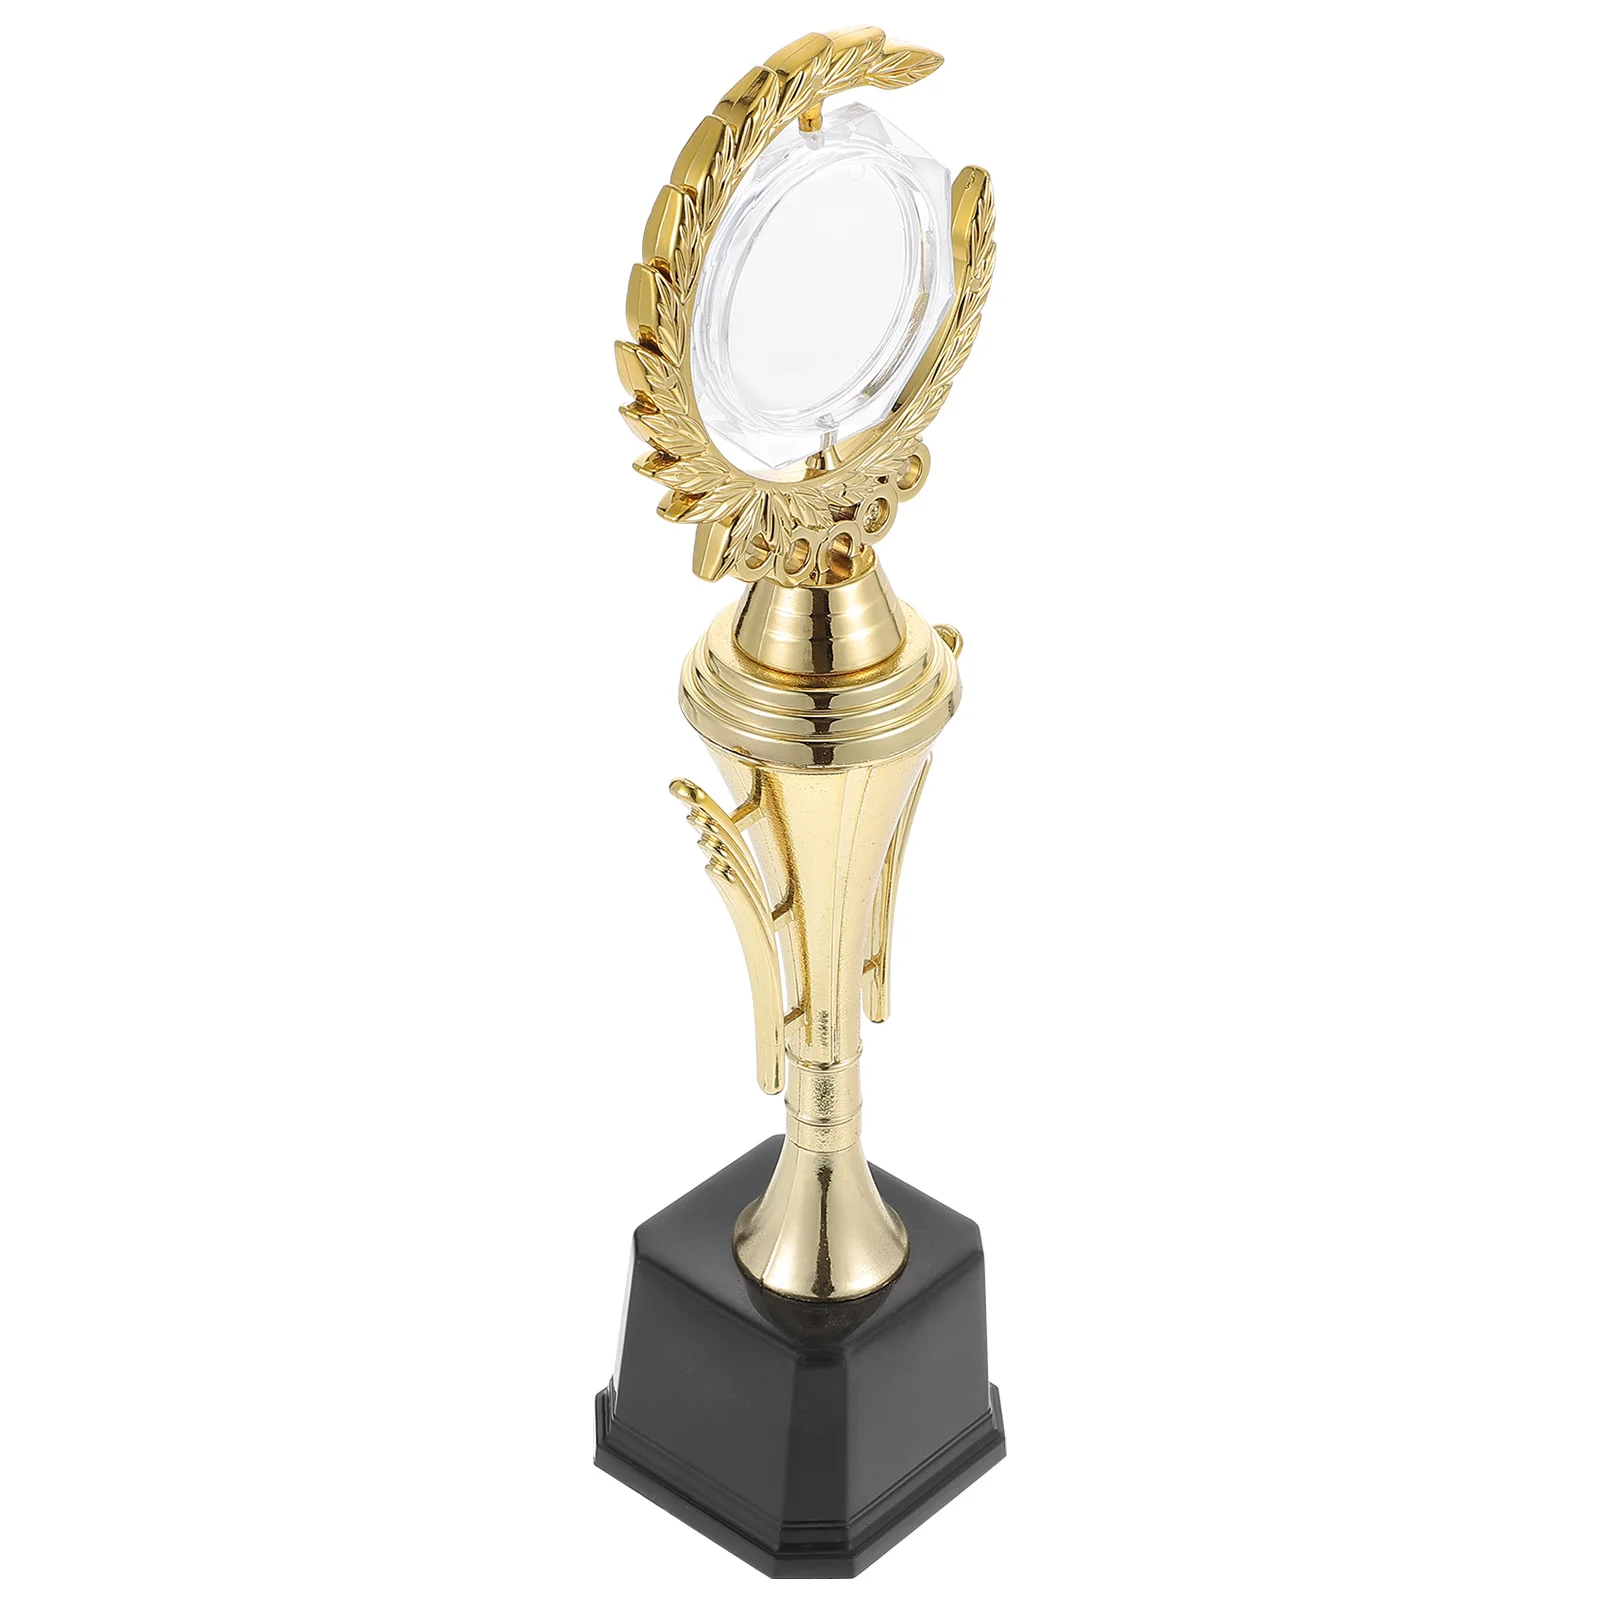 

Трофей пластиковый золотистый наградный трофеи наградная награда Для детей Универсальный Кубок для студентов и детей Спорт